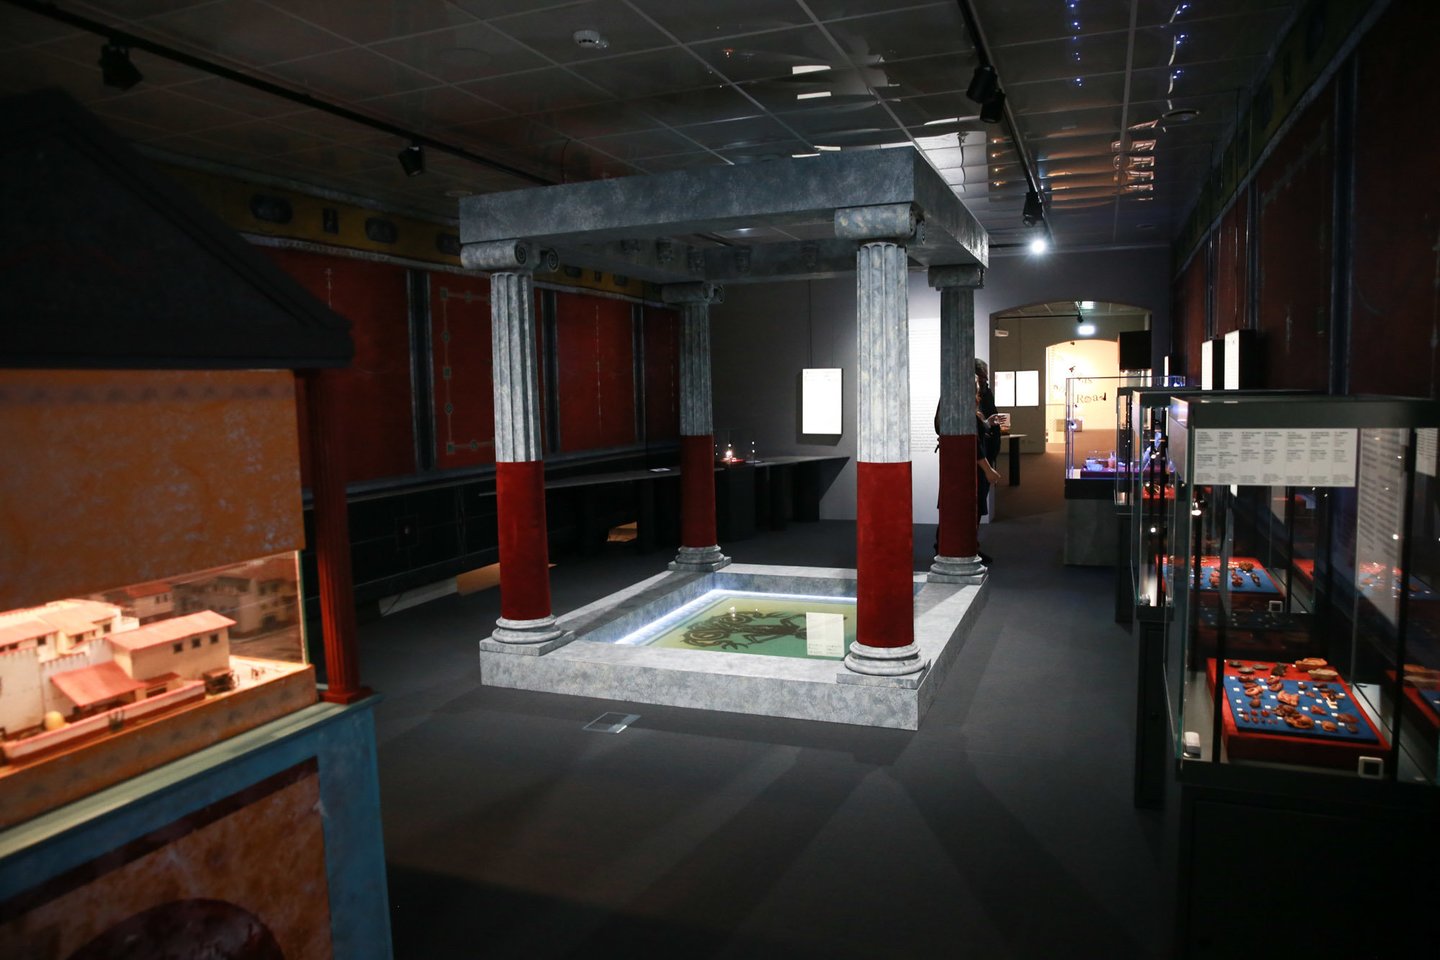  Viena iš ekspozicijų salių įrengta kaip turtingo romėno rezidencija.<br> R. Danisevičiaus nuotr.